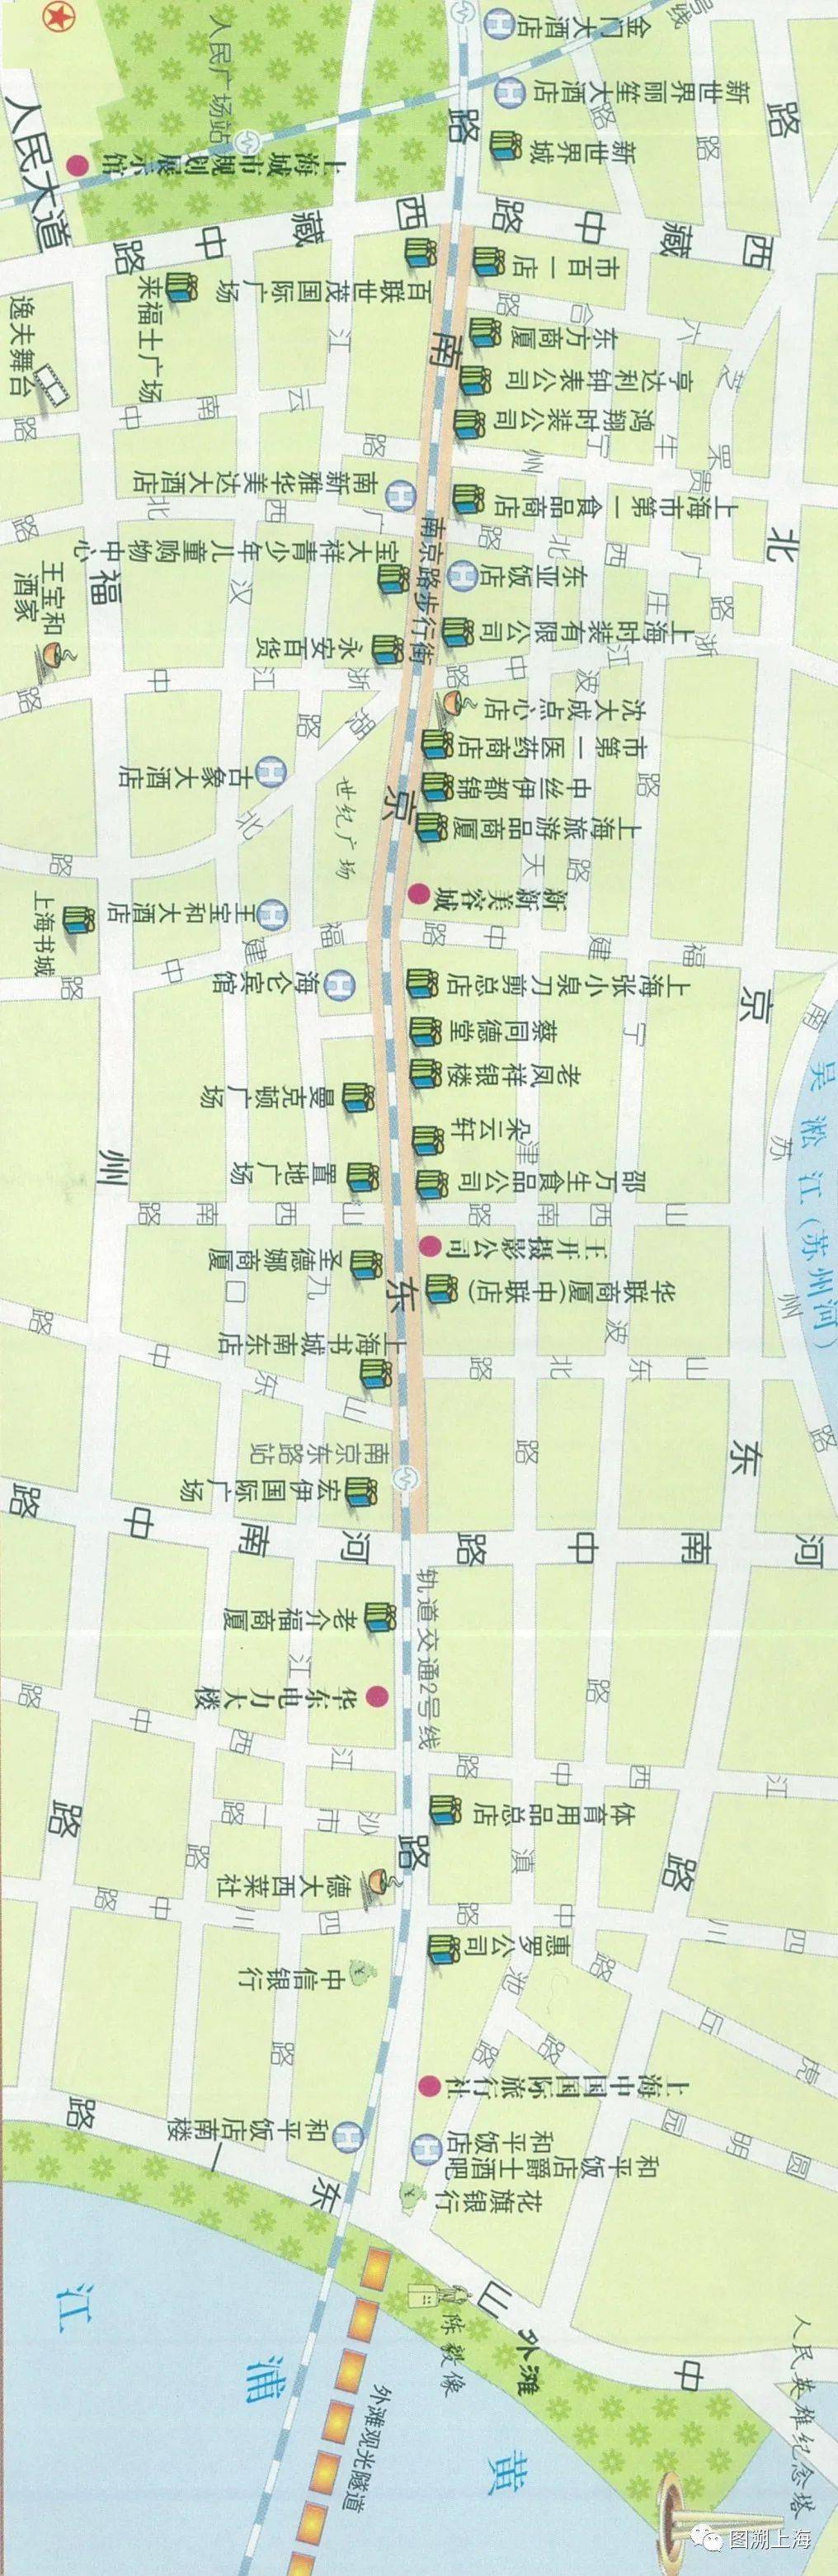 2006年地图中的南京东路 以2010年世博会为契机,南京路继续深化结构